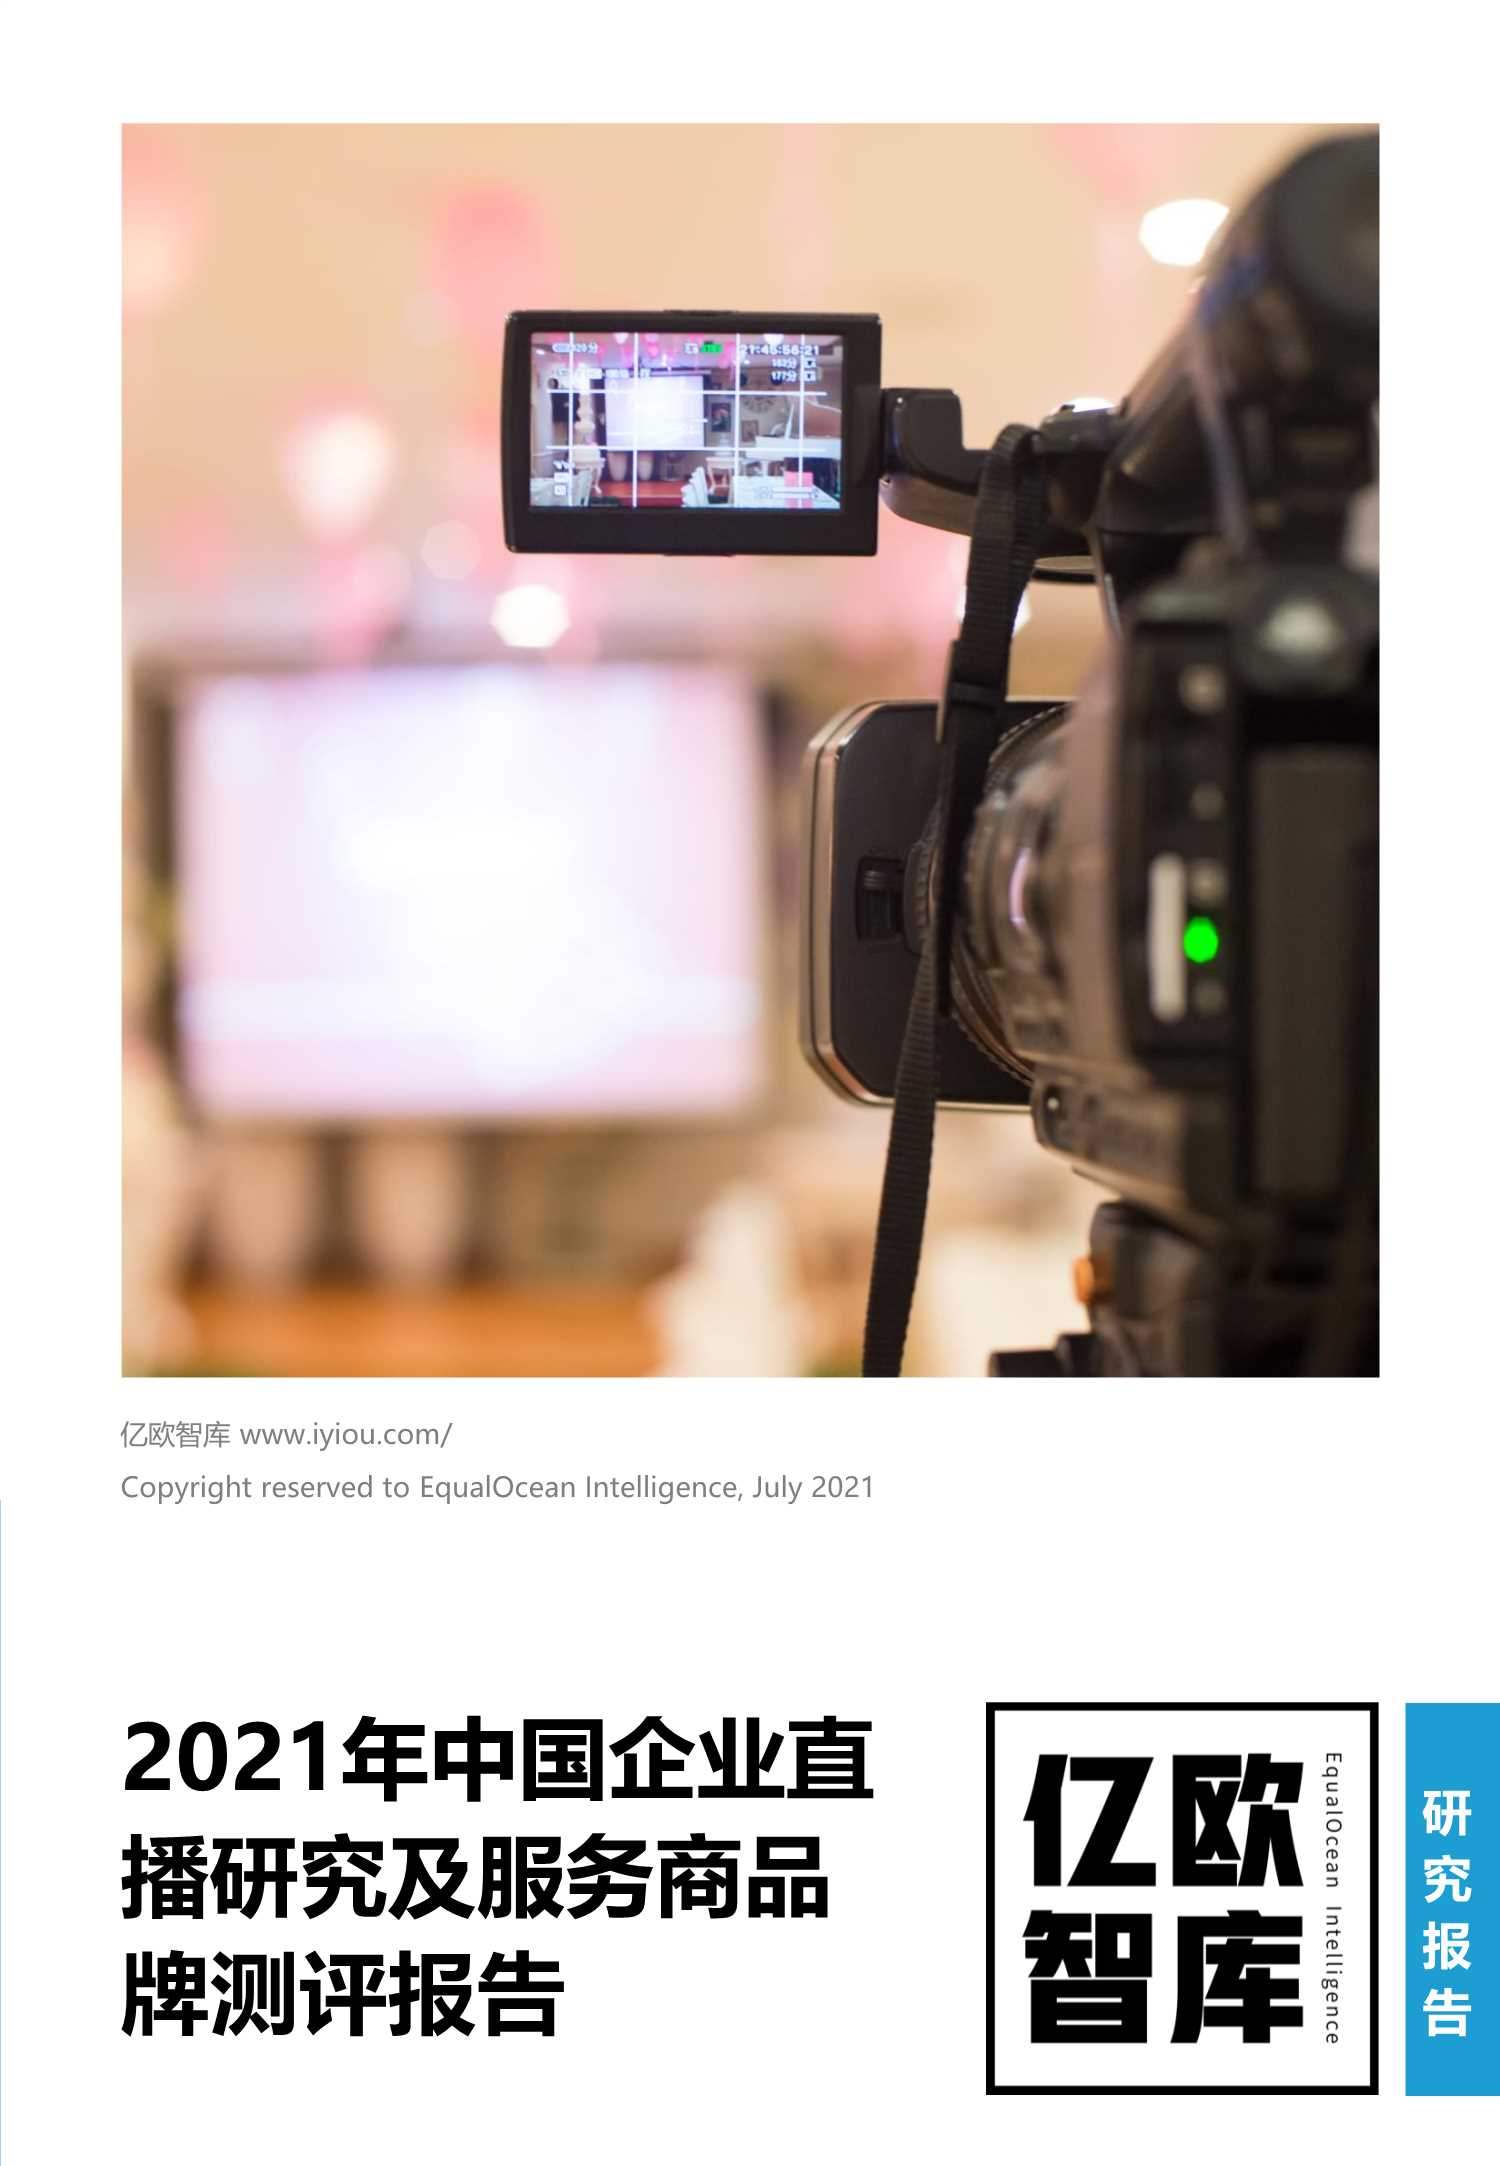 亿欧智库-2021年中国企业直播研究及服务商品牌测评报告-2021.08-47页